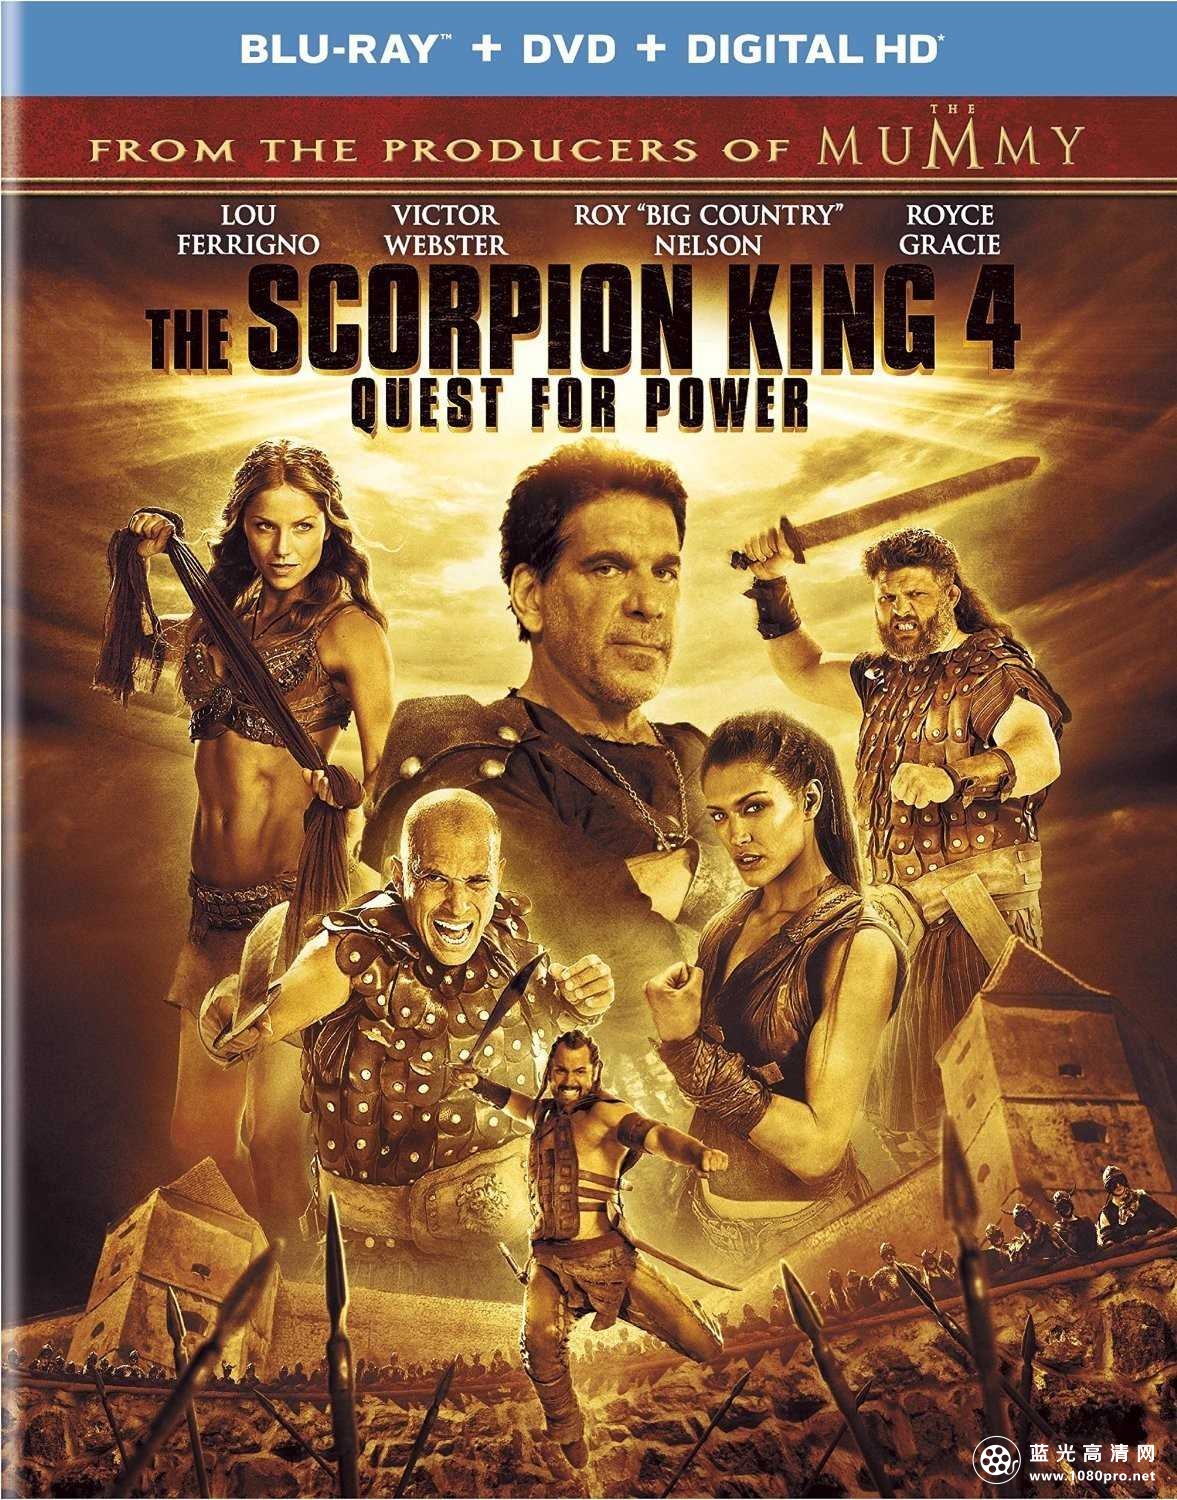 蝎子王4 The.Scorpion.King.4.Quest.for.Power.2015.720p.BluRay.x264-ROVERS 5.52GB-1.jpg